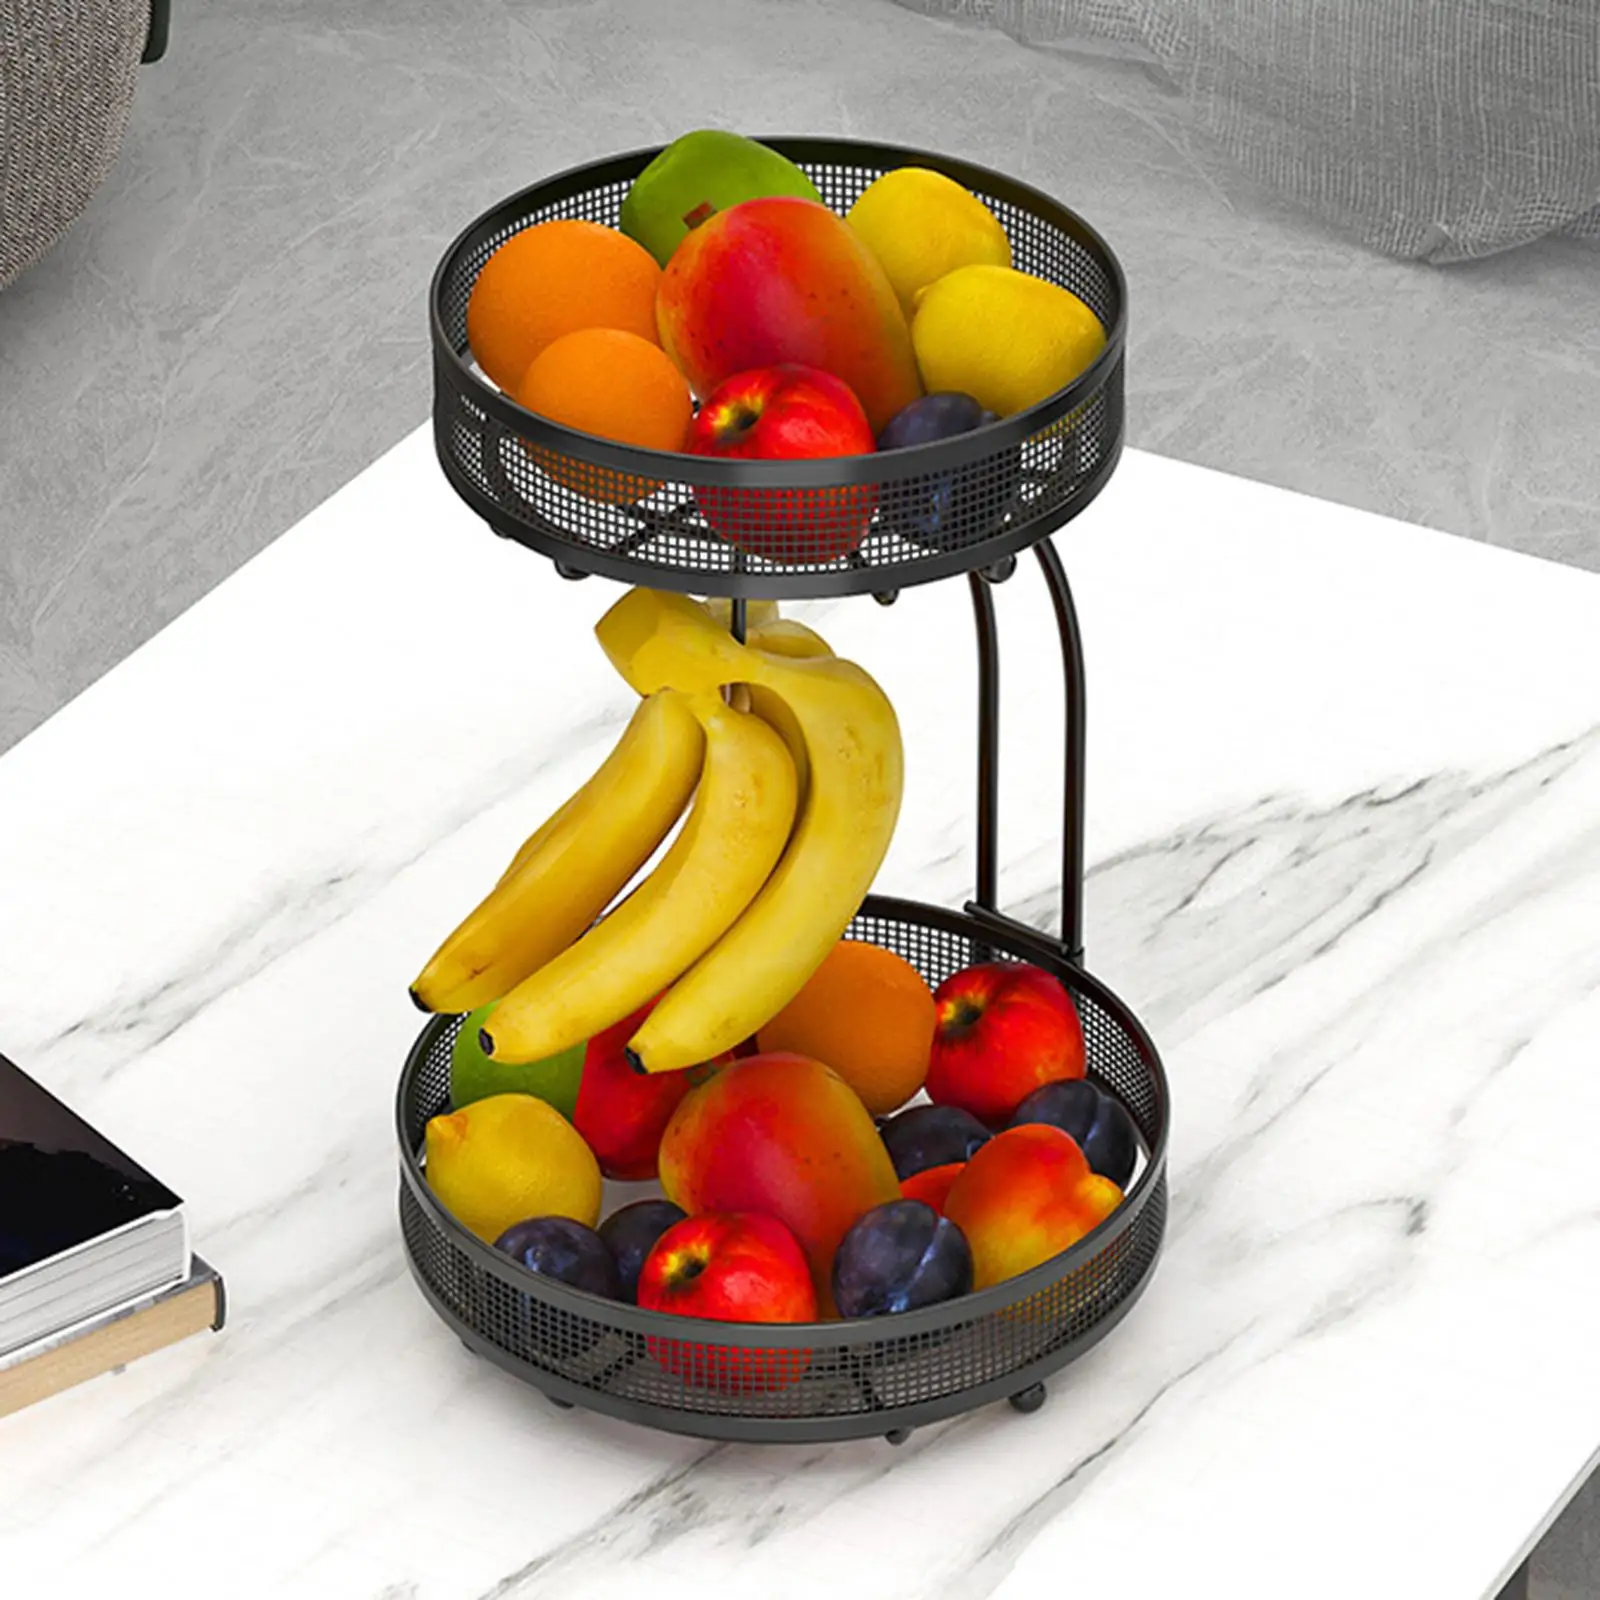 Metal 2 Tier Fruit Vegetables Basket with Banana Hanger Multifunction Fruit Vegetable Storage Holder Display for Vegetables